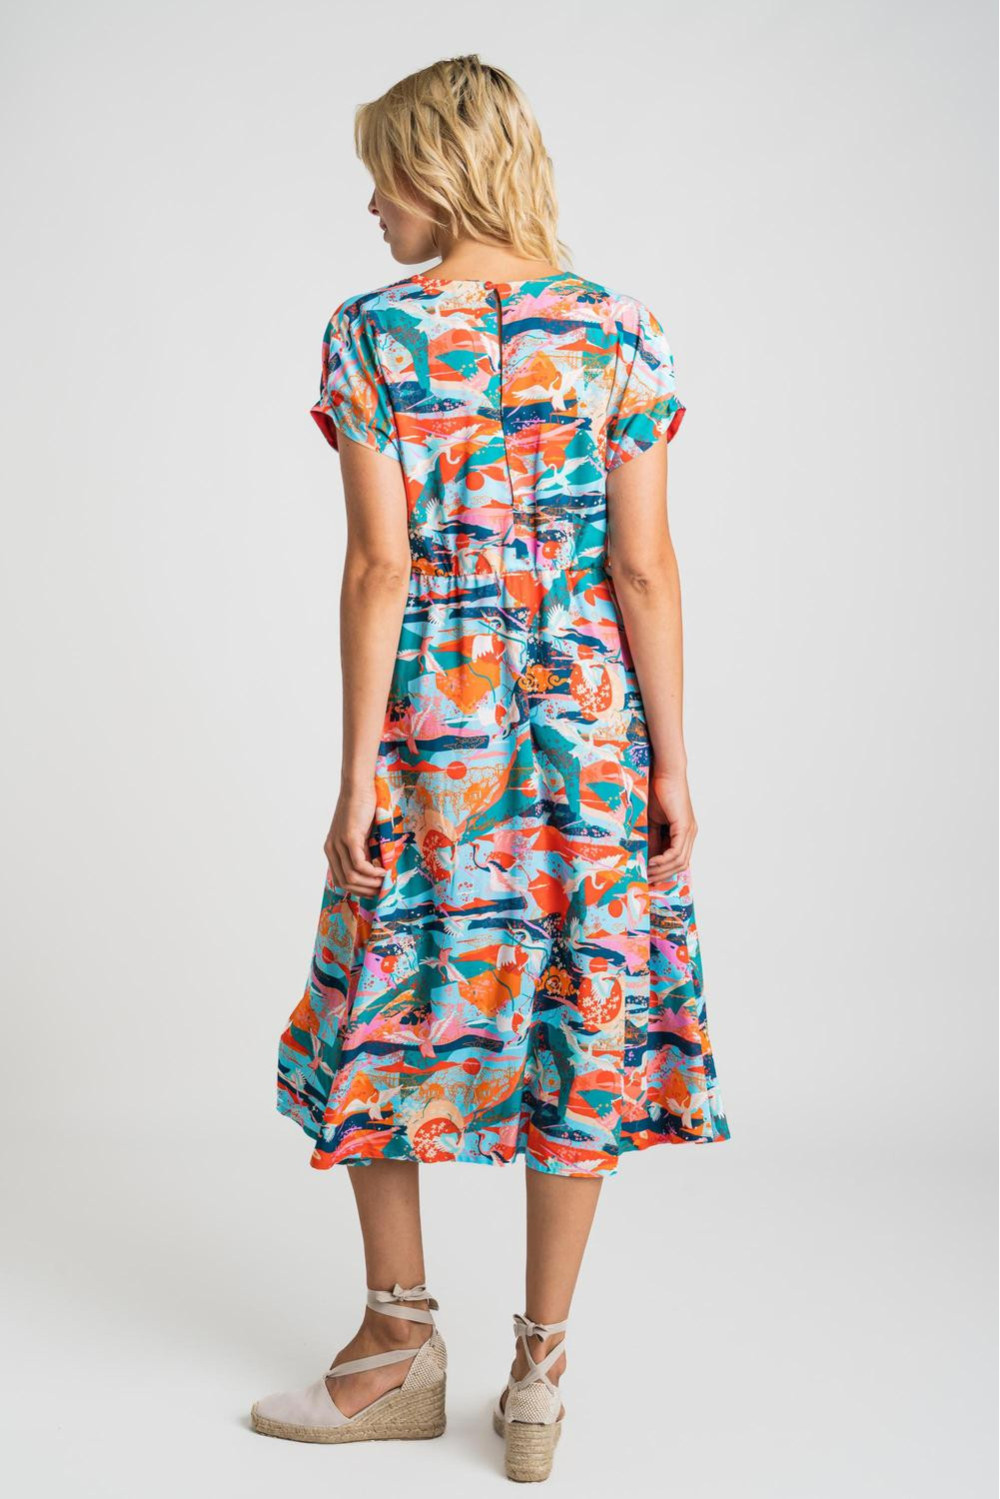 Disfraces frijoles nombre de la marca Vestido midi manga corta con estampado de aves coral y azul - Rosalita McGee